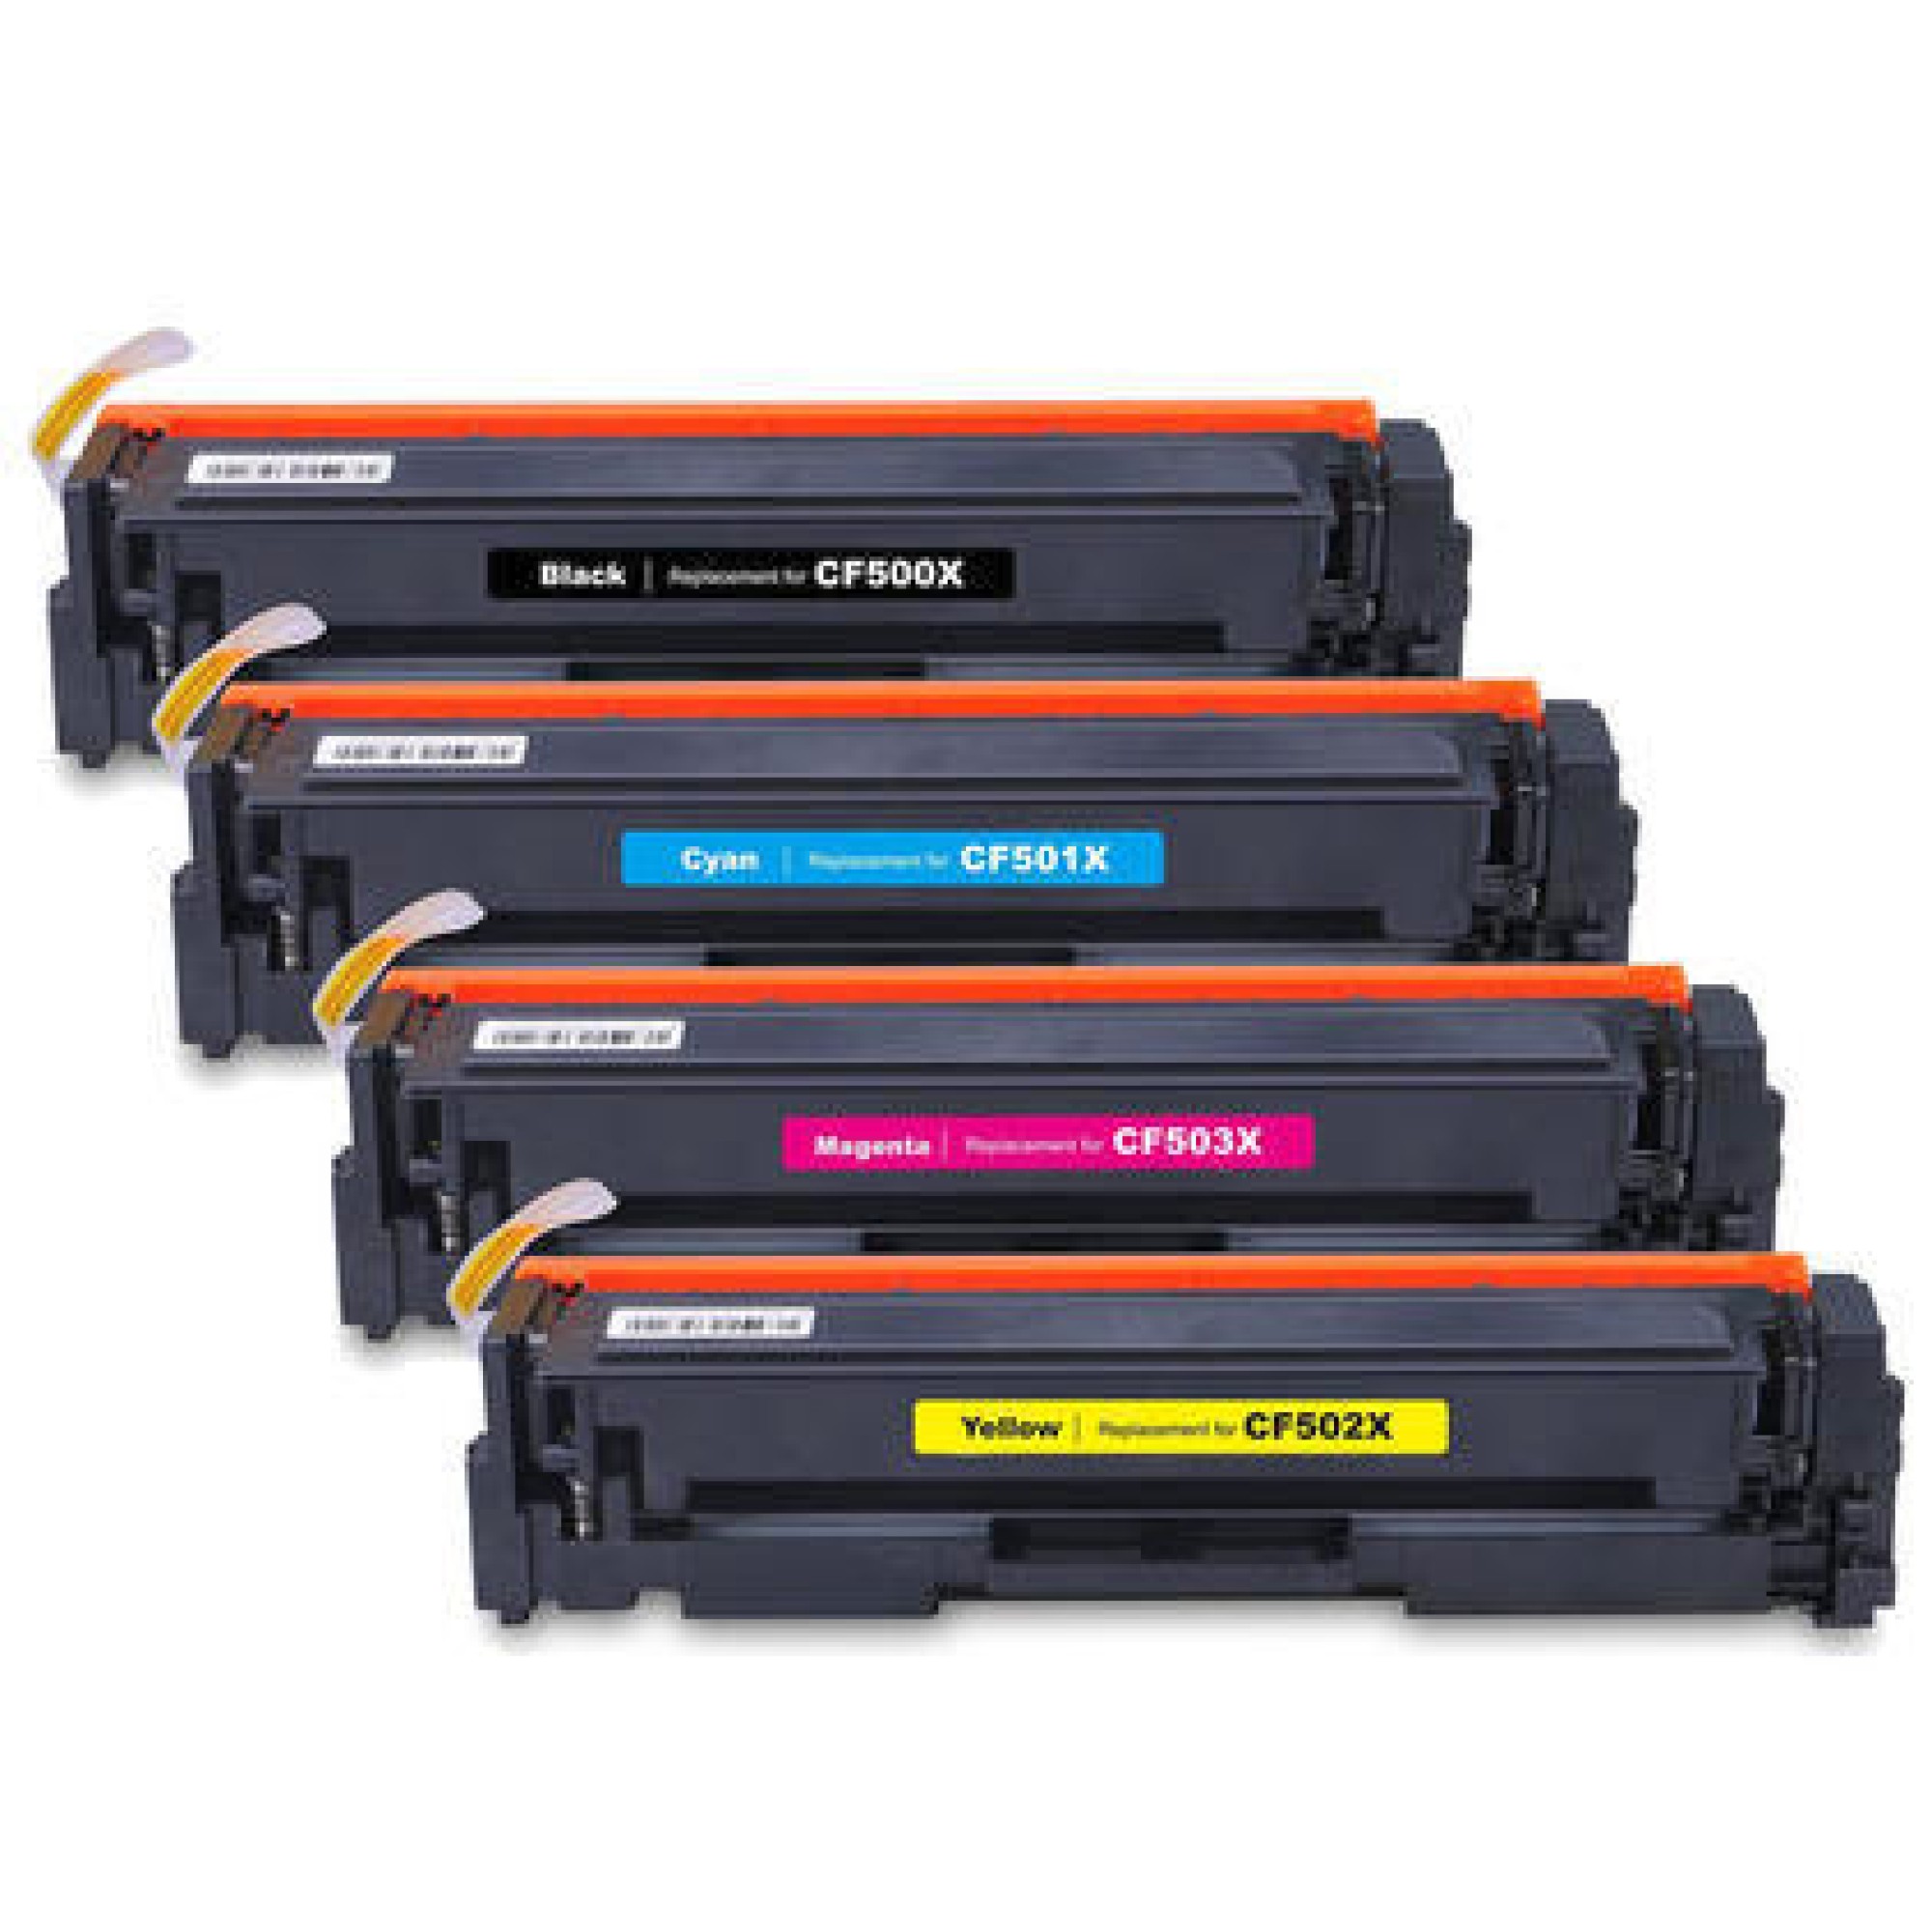 HP 202X Black HP202A colors Compatible Toners CF500X CF501a CF502a CF503a